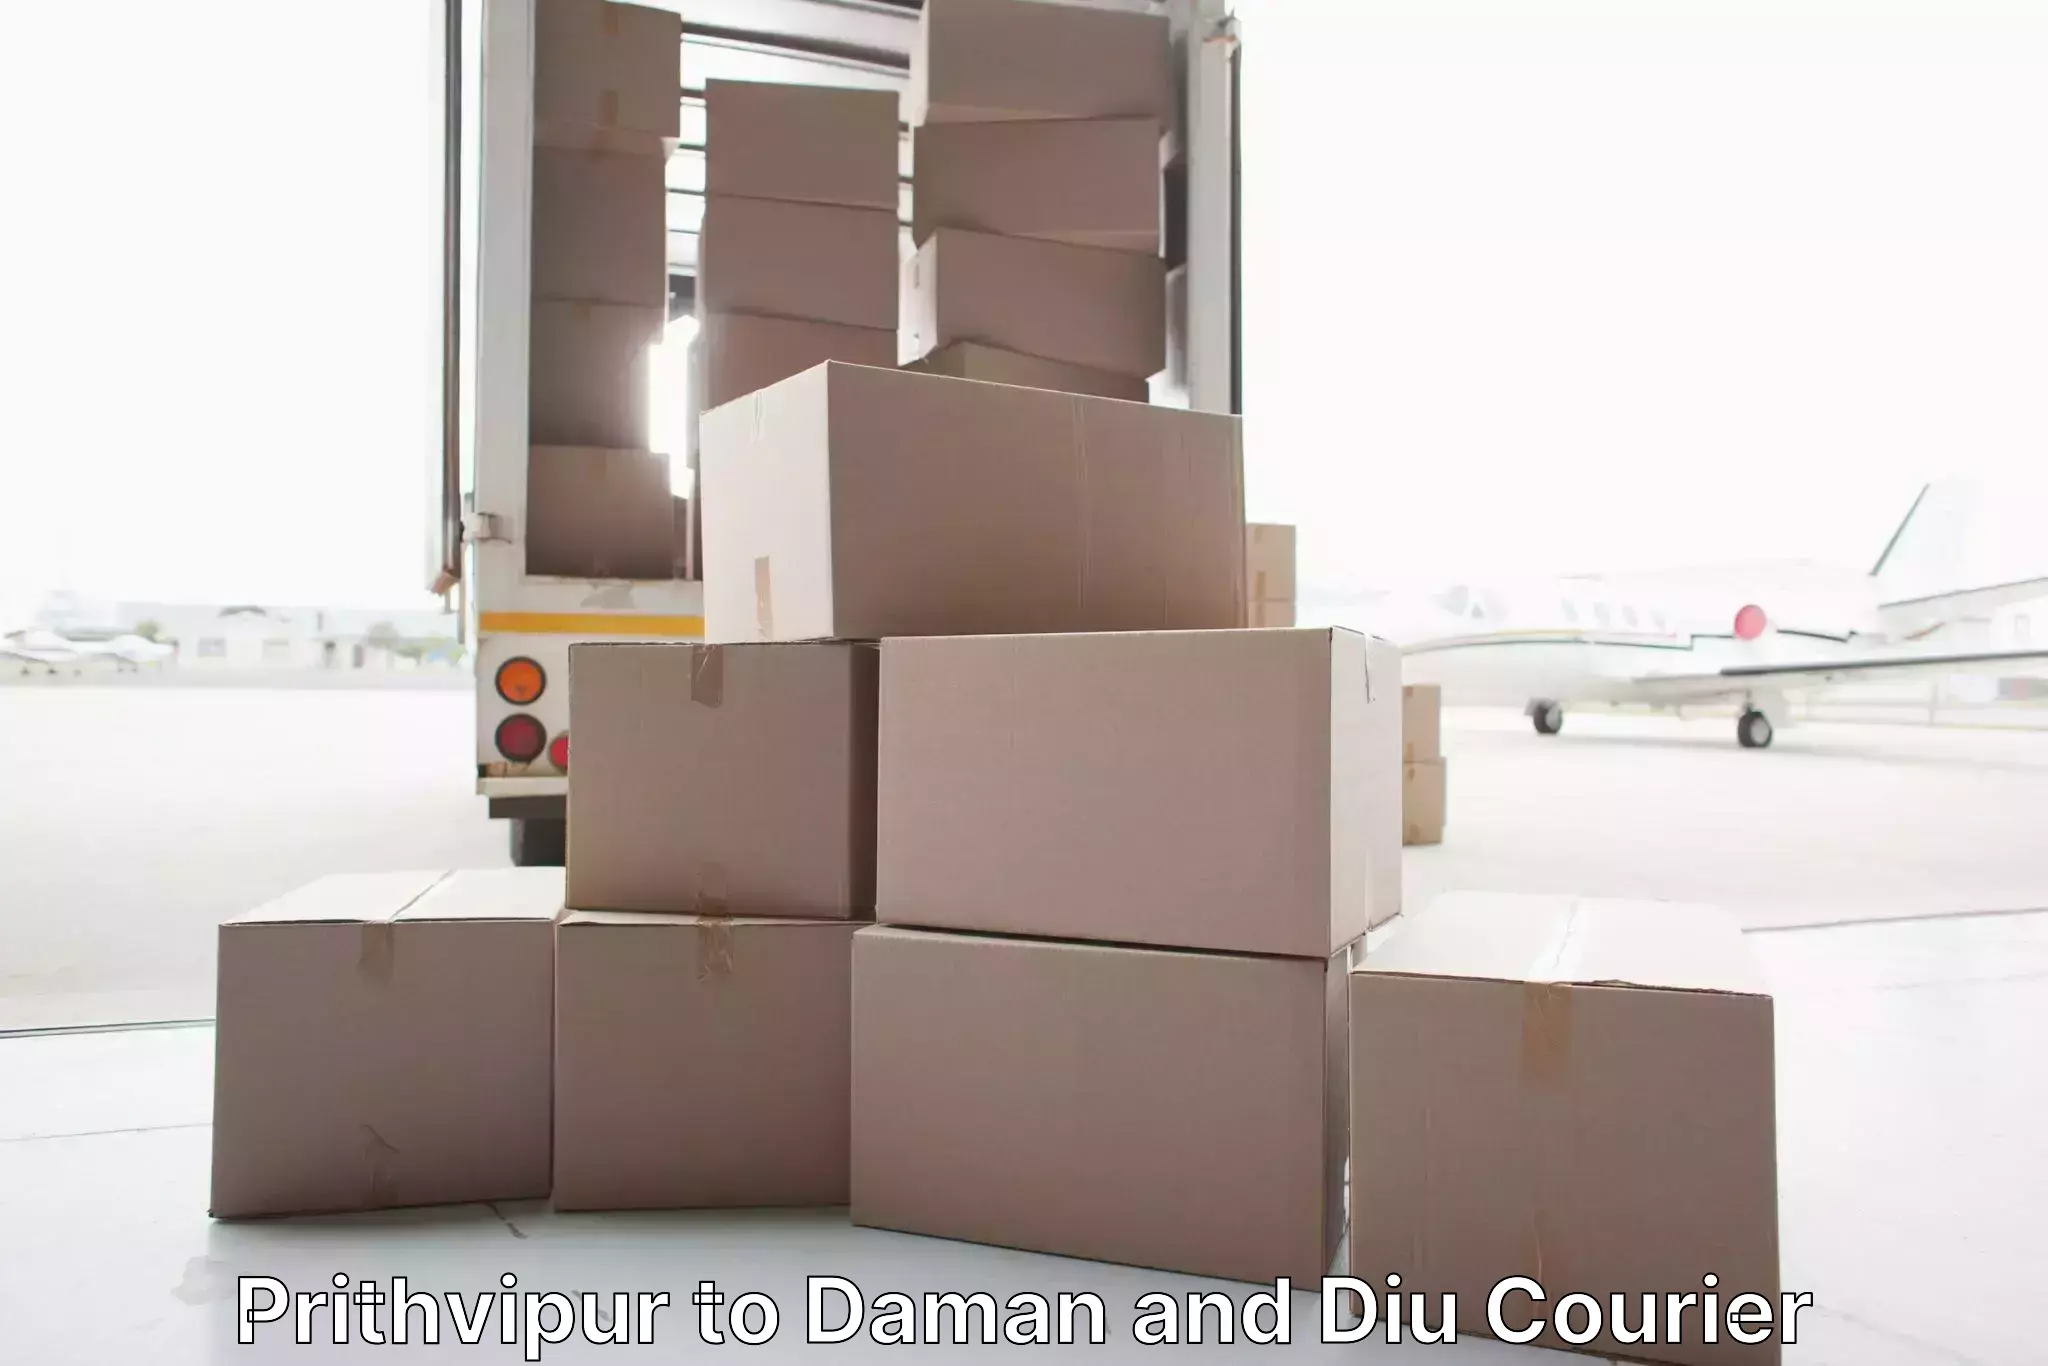 Custom furniture transport in Prithvipur to Daman and Diu